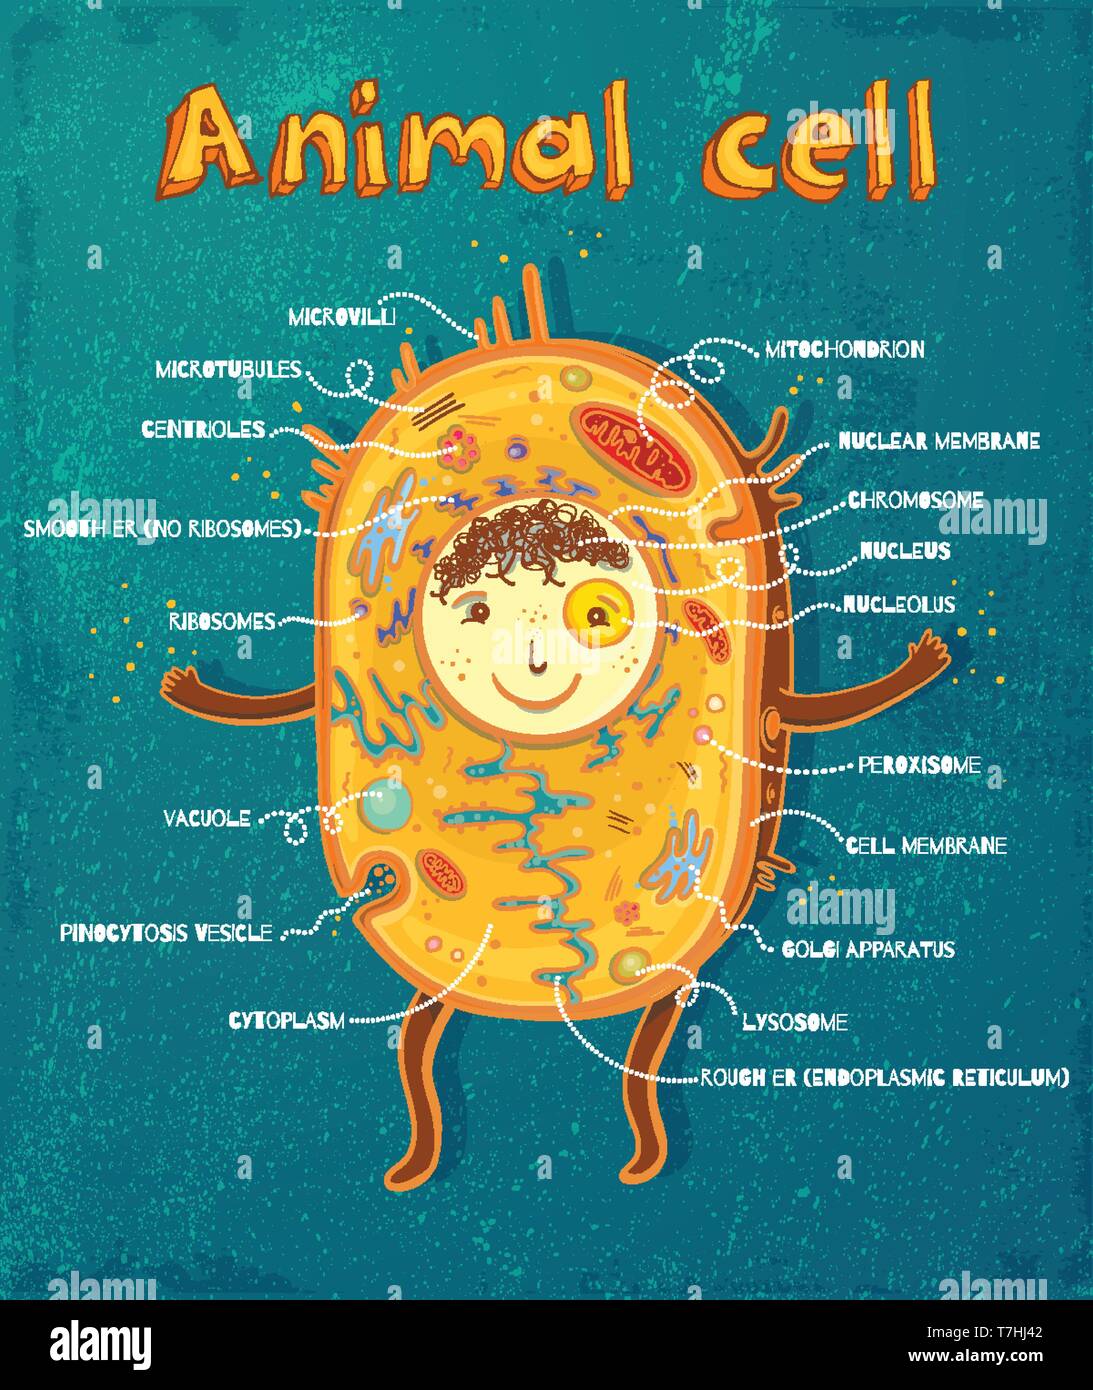 Fumetto illustrazione vettoriale di struttura della cellula animale. Illustrazione che mostra la cellula animale anatomia Illustrazione Vettoriale